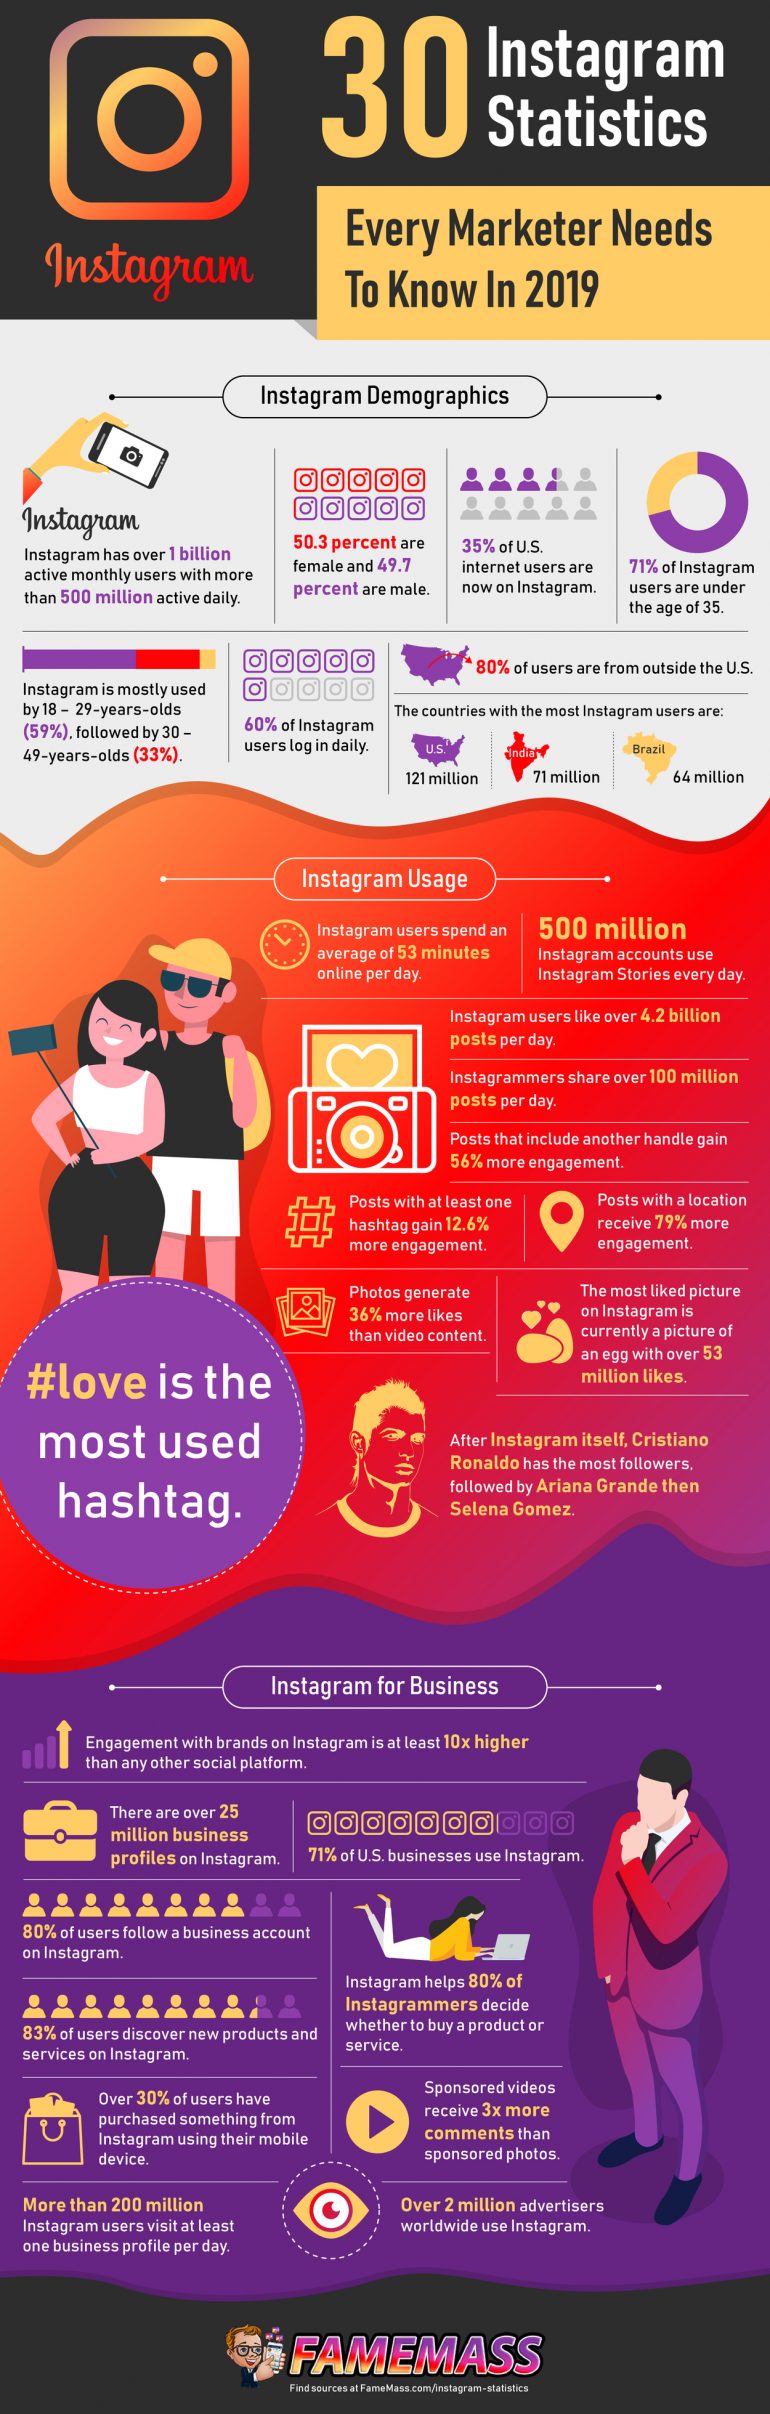 Infographic met 30 feiten over Instagram.